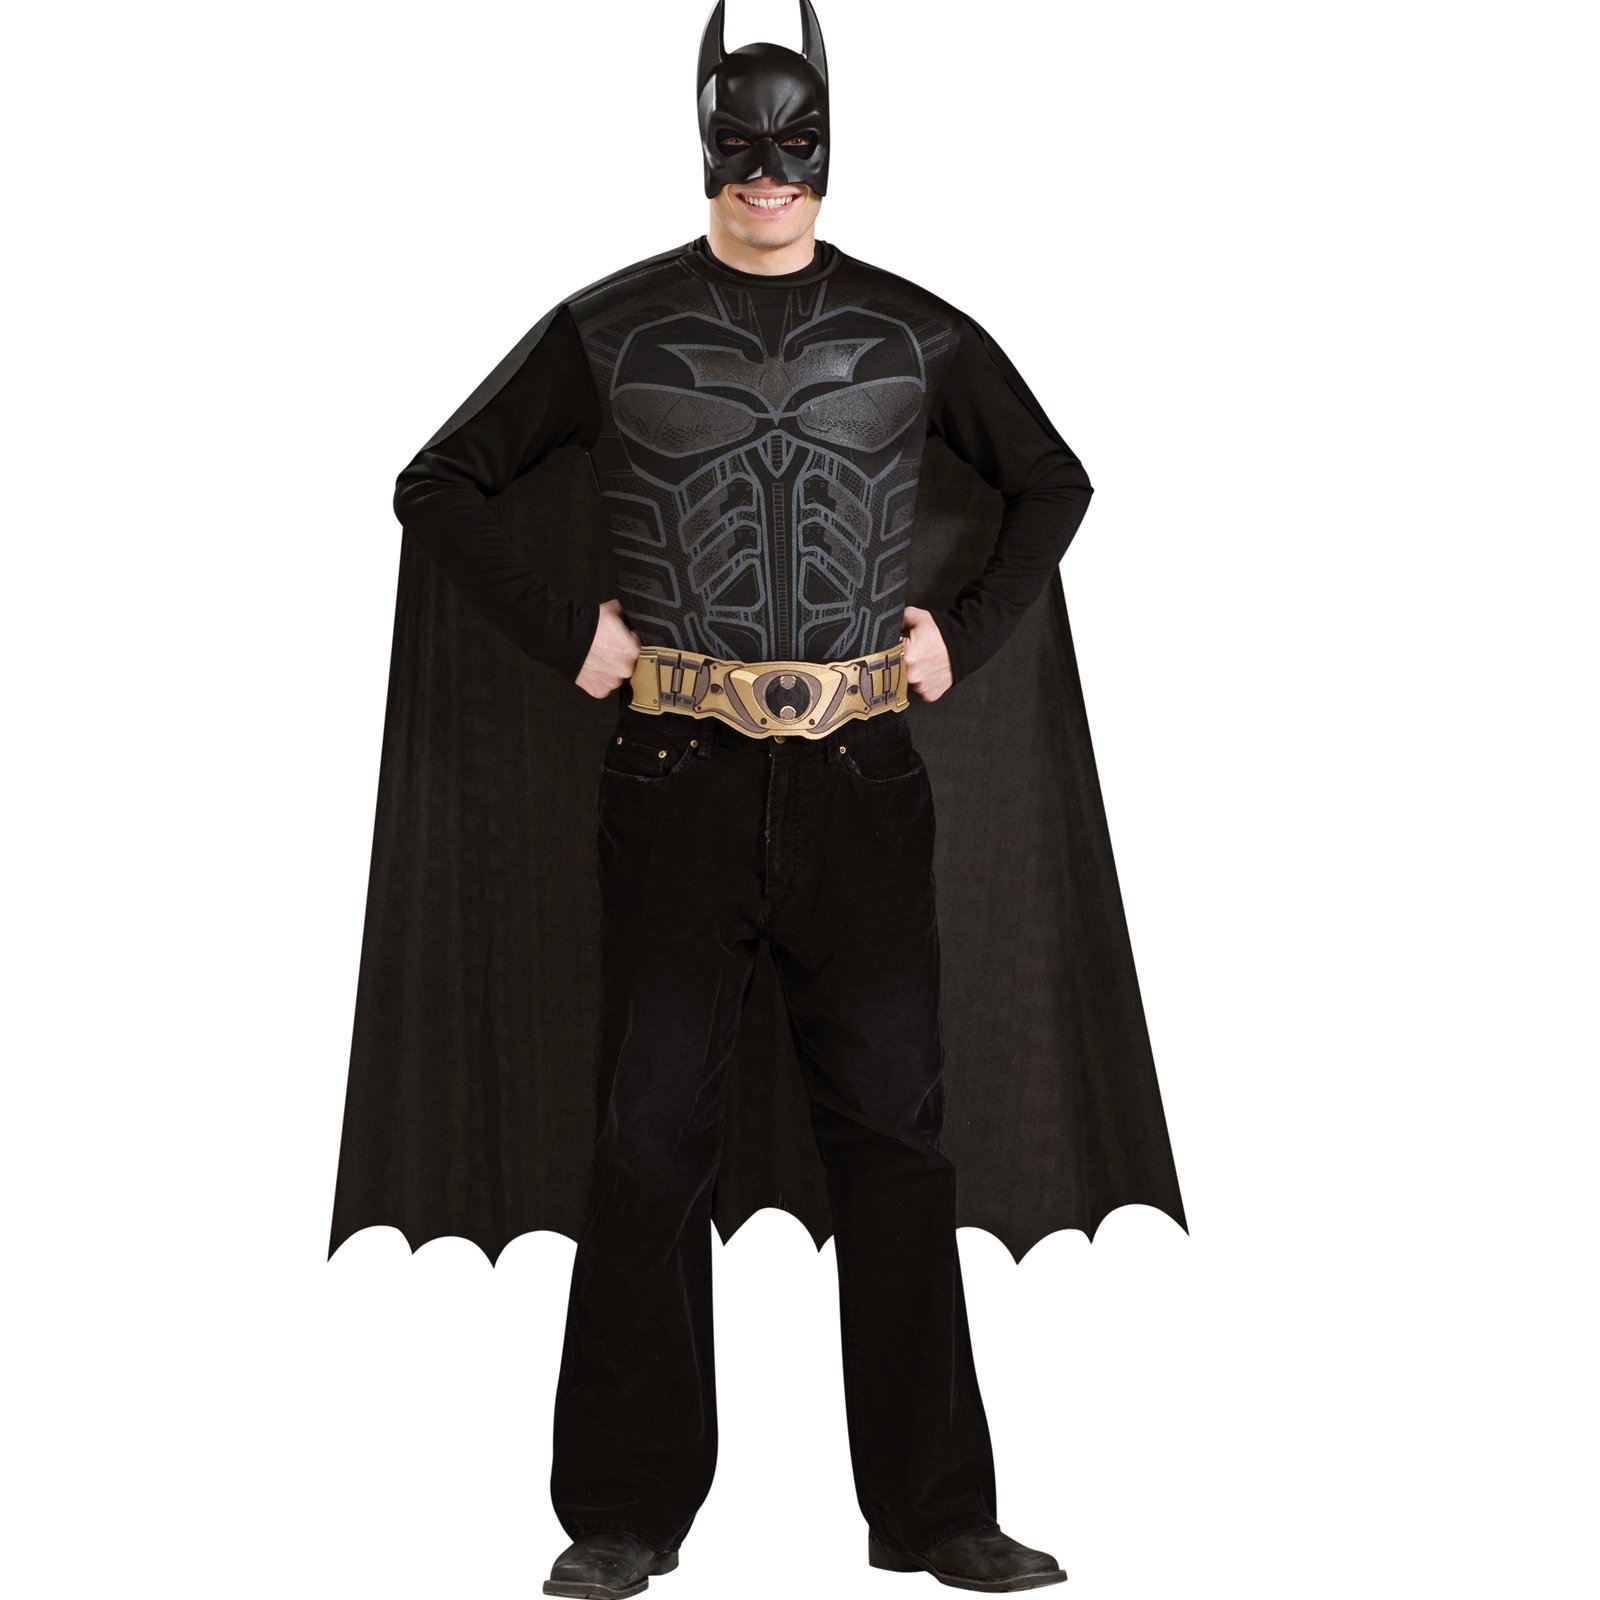 Batman Dark Knight - Batman Adult Costume Kit